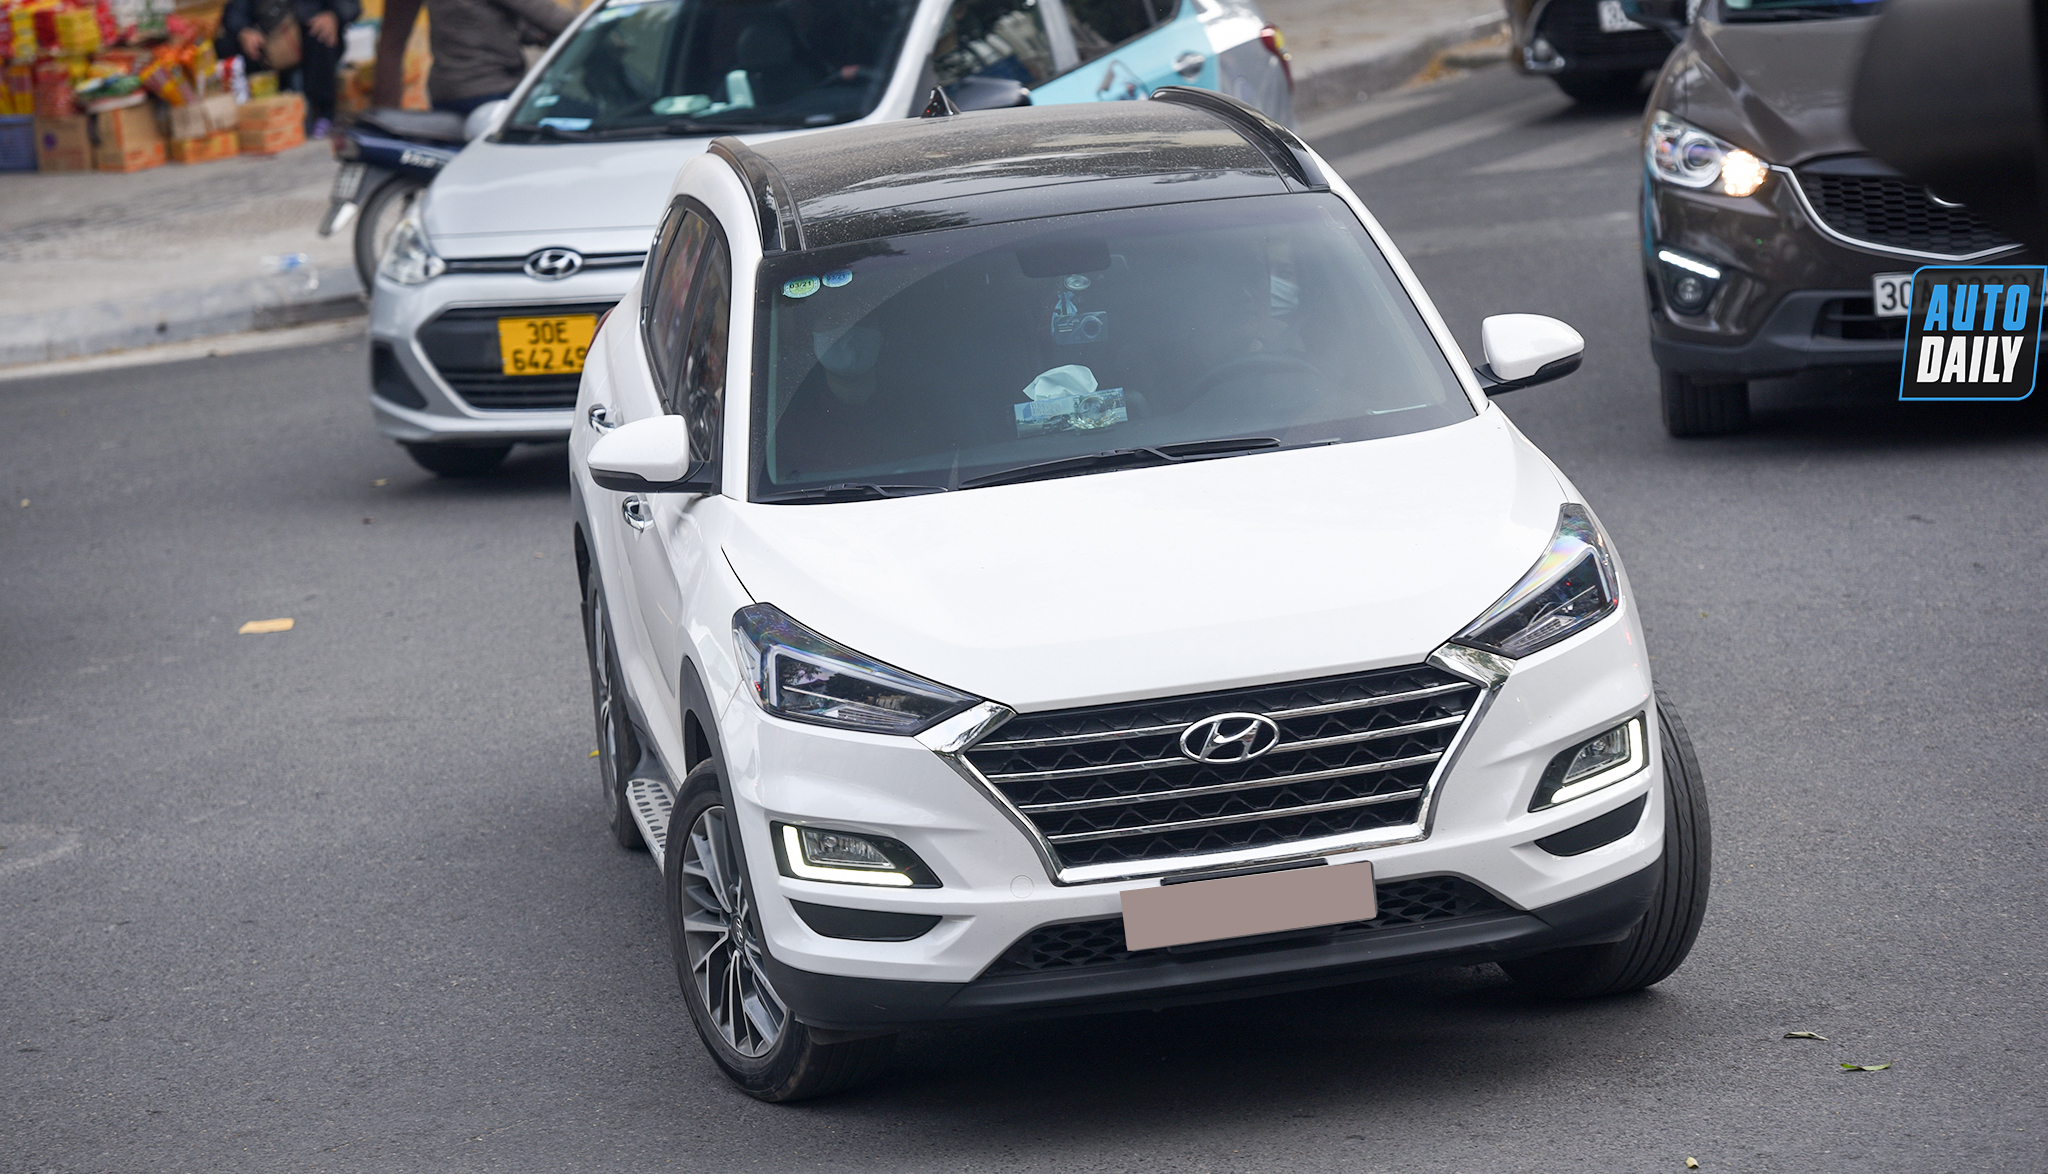 Hyundai có cơ hội năm thứ 2 liên tiếp vượt Toyota trong cuộc đua doanh số dsc-3593-copy.jpg